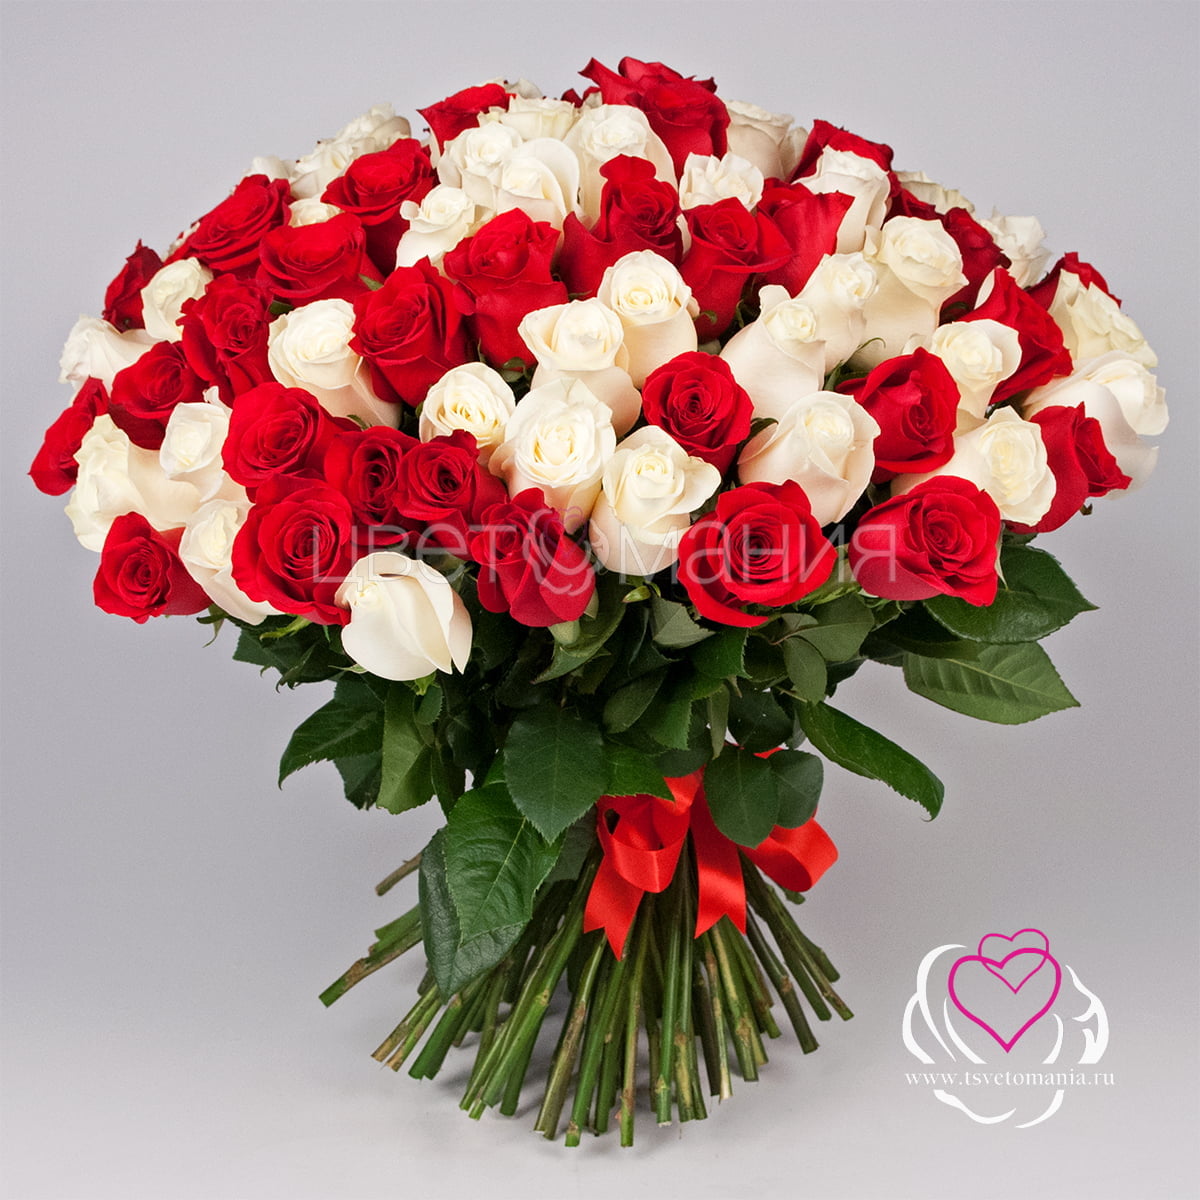 101 белая и красная роза 50 см Premium белая роза эквадор 50 см